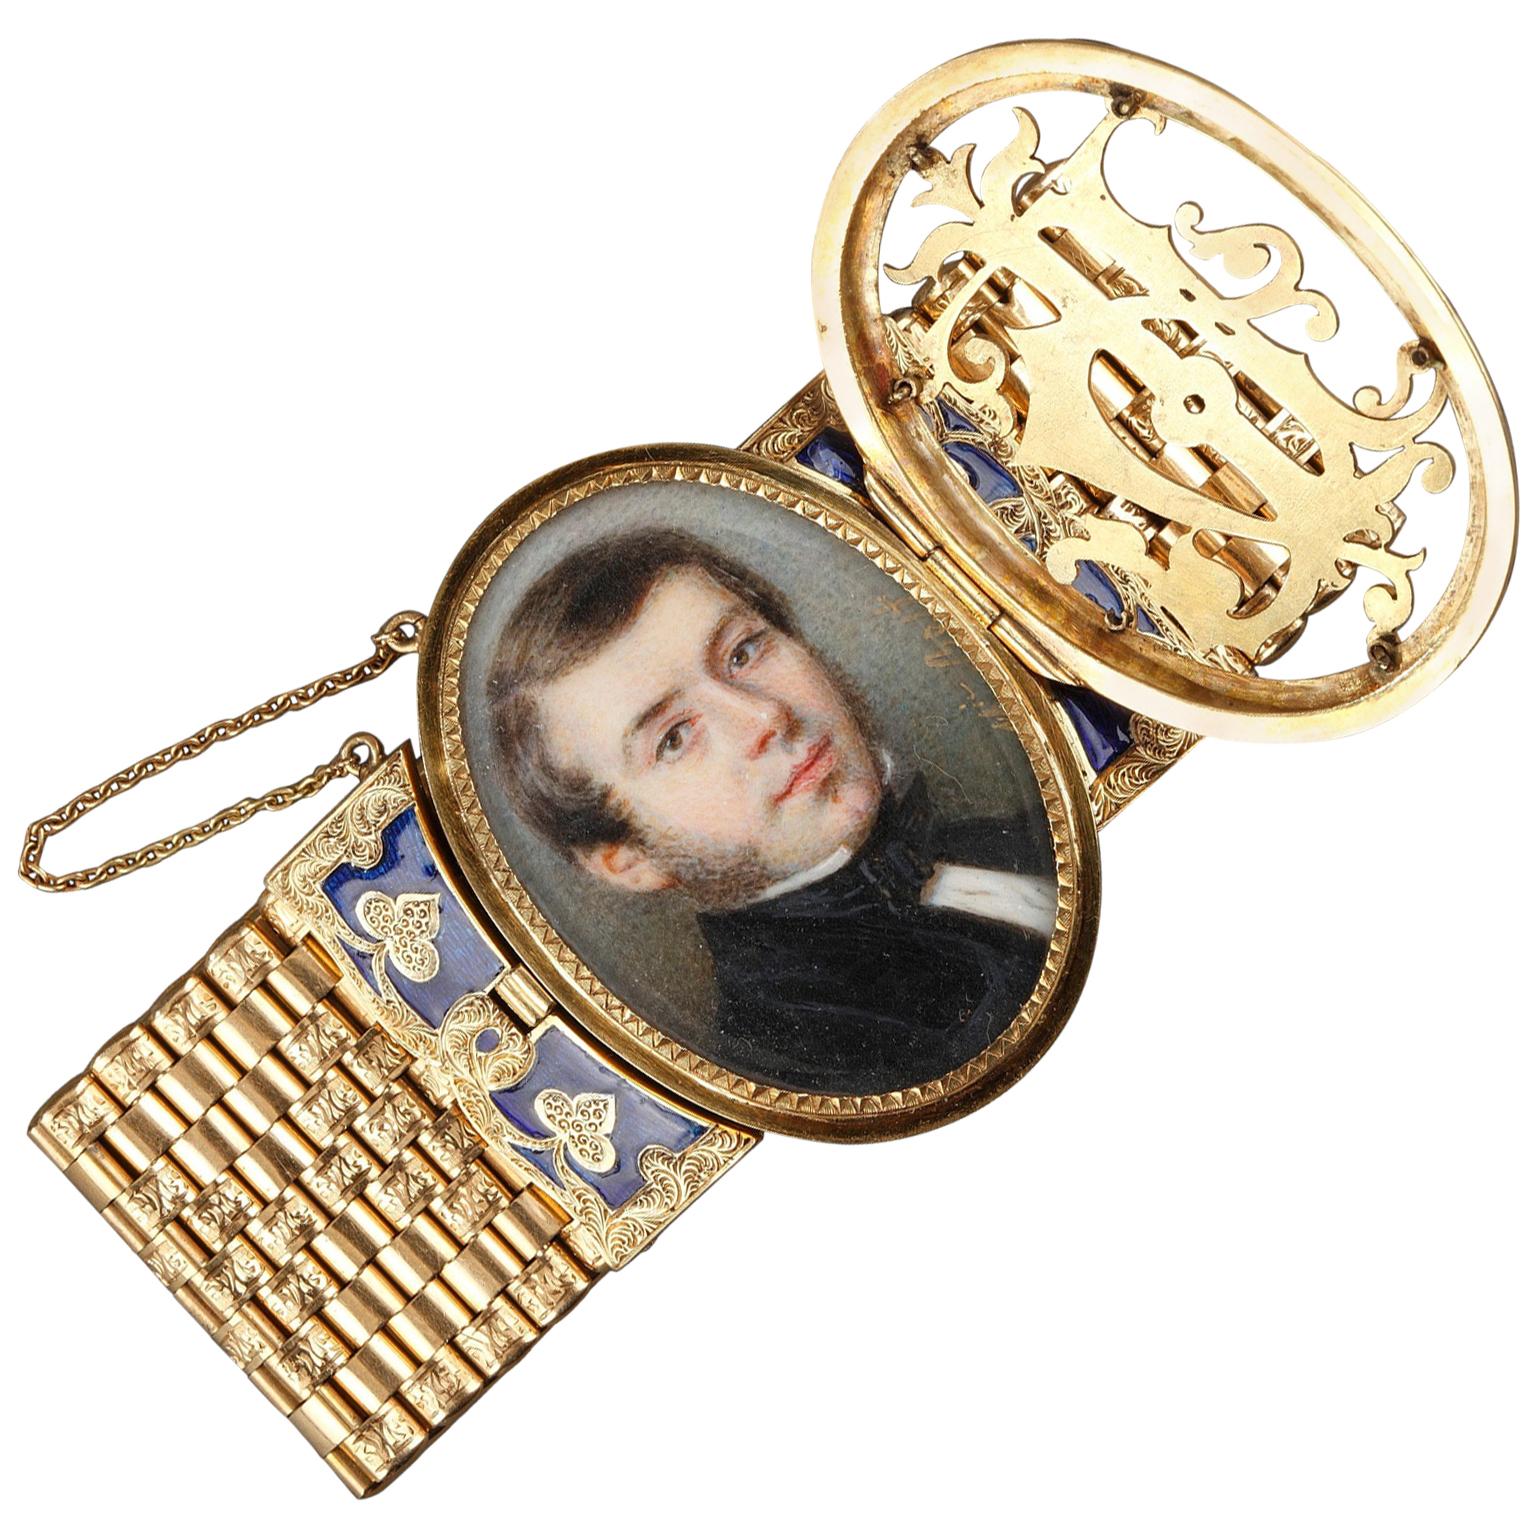 Miniatur-Armband aus Gold und Emaille, Bost, 19. Jahrhundert